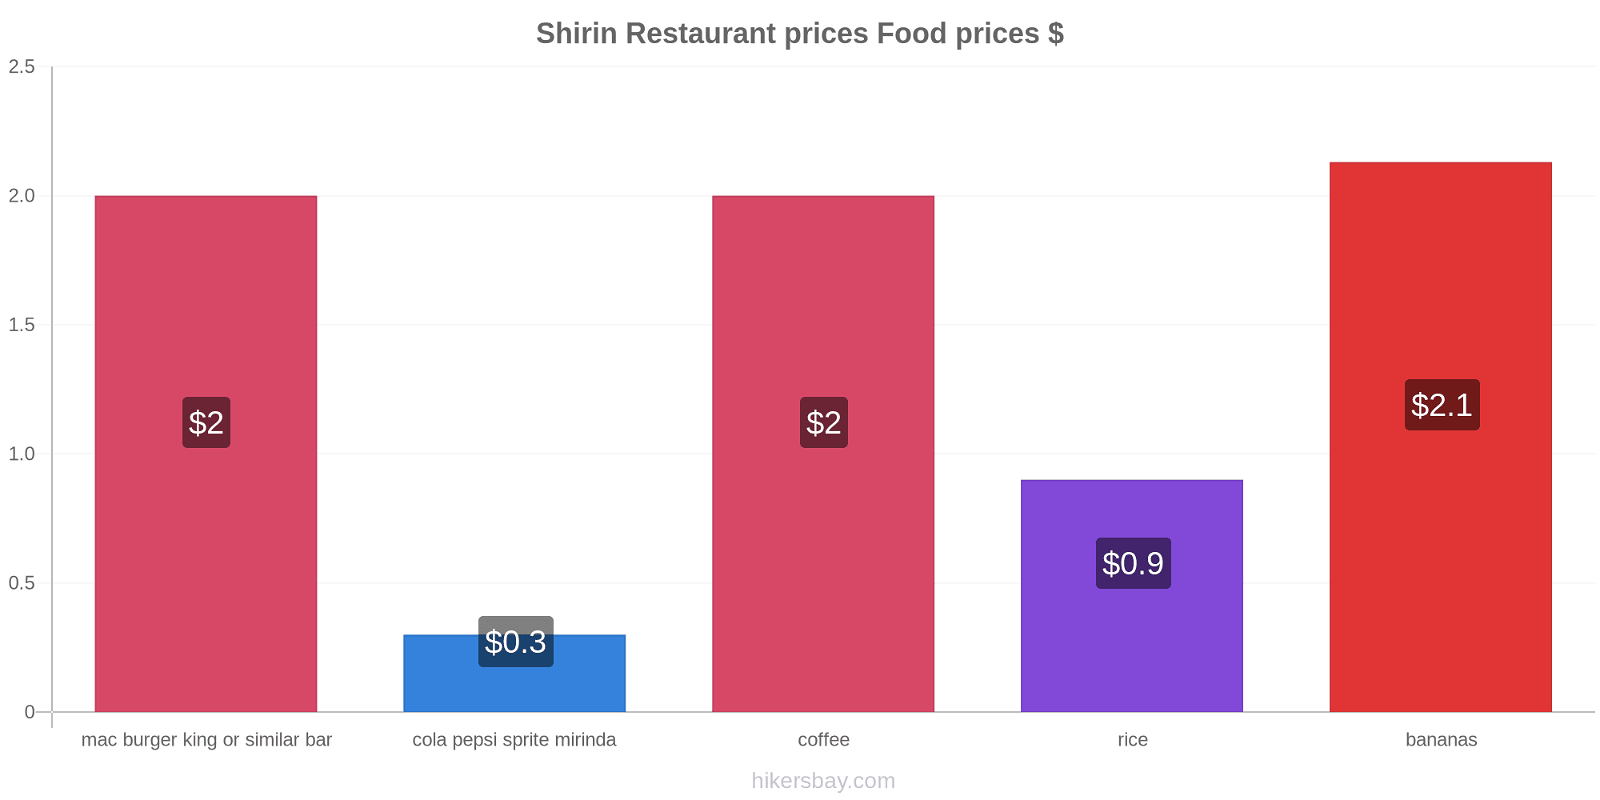 Shirin price changes hikersbay.com